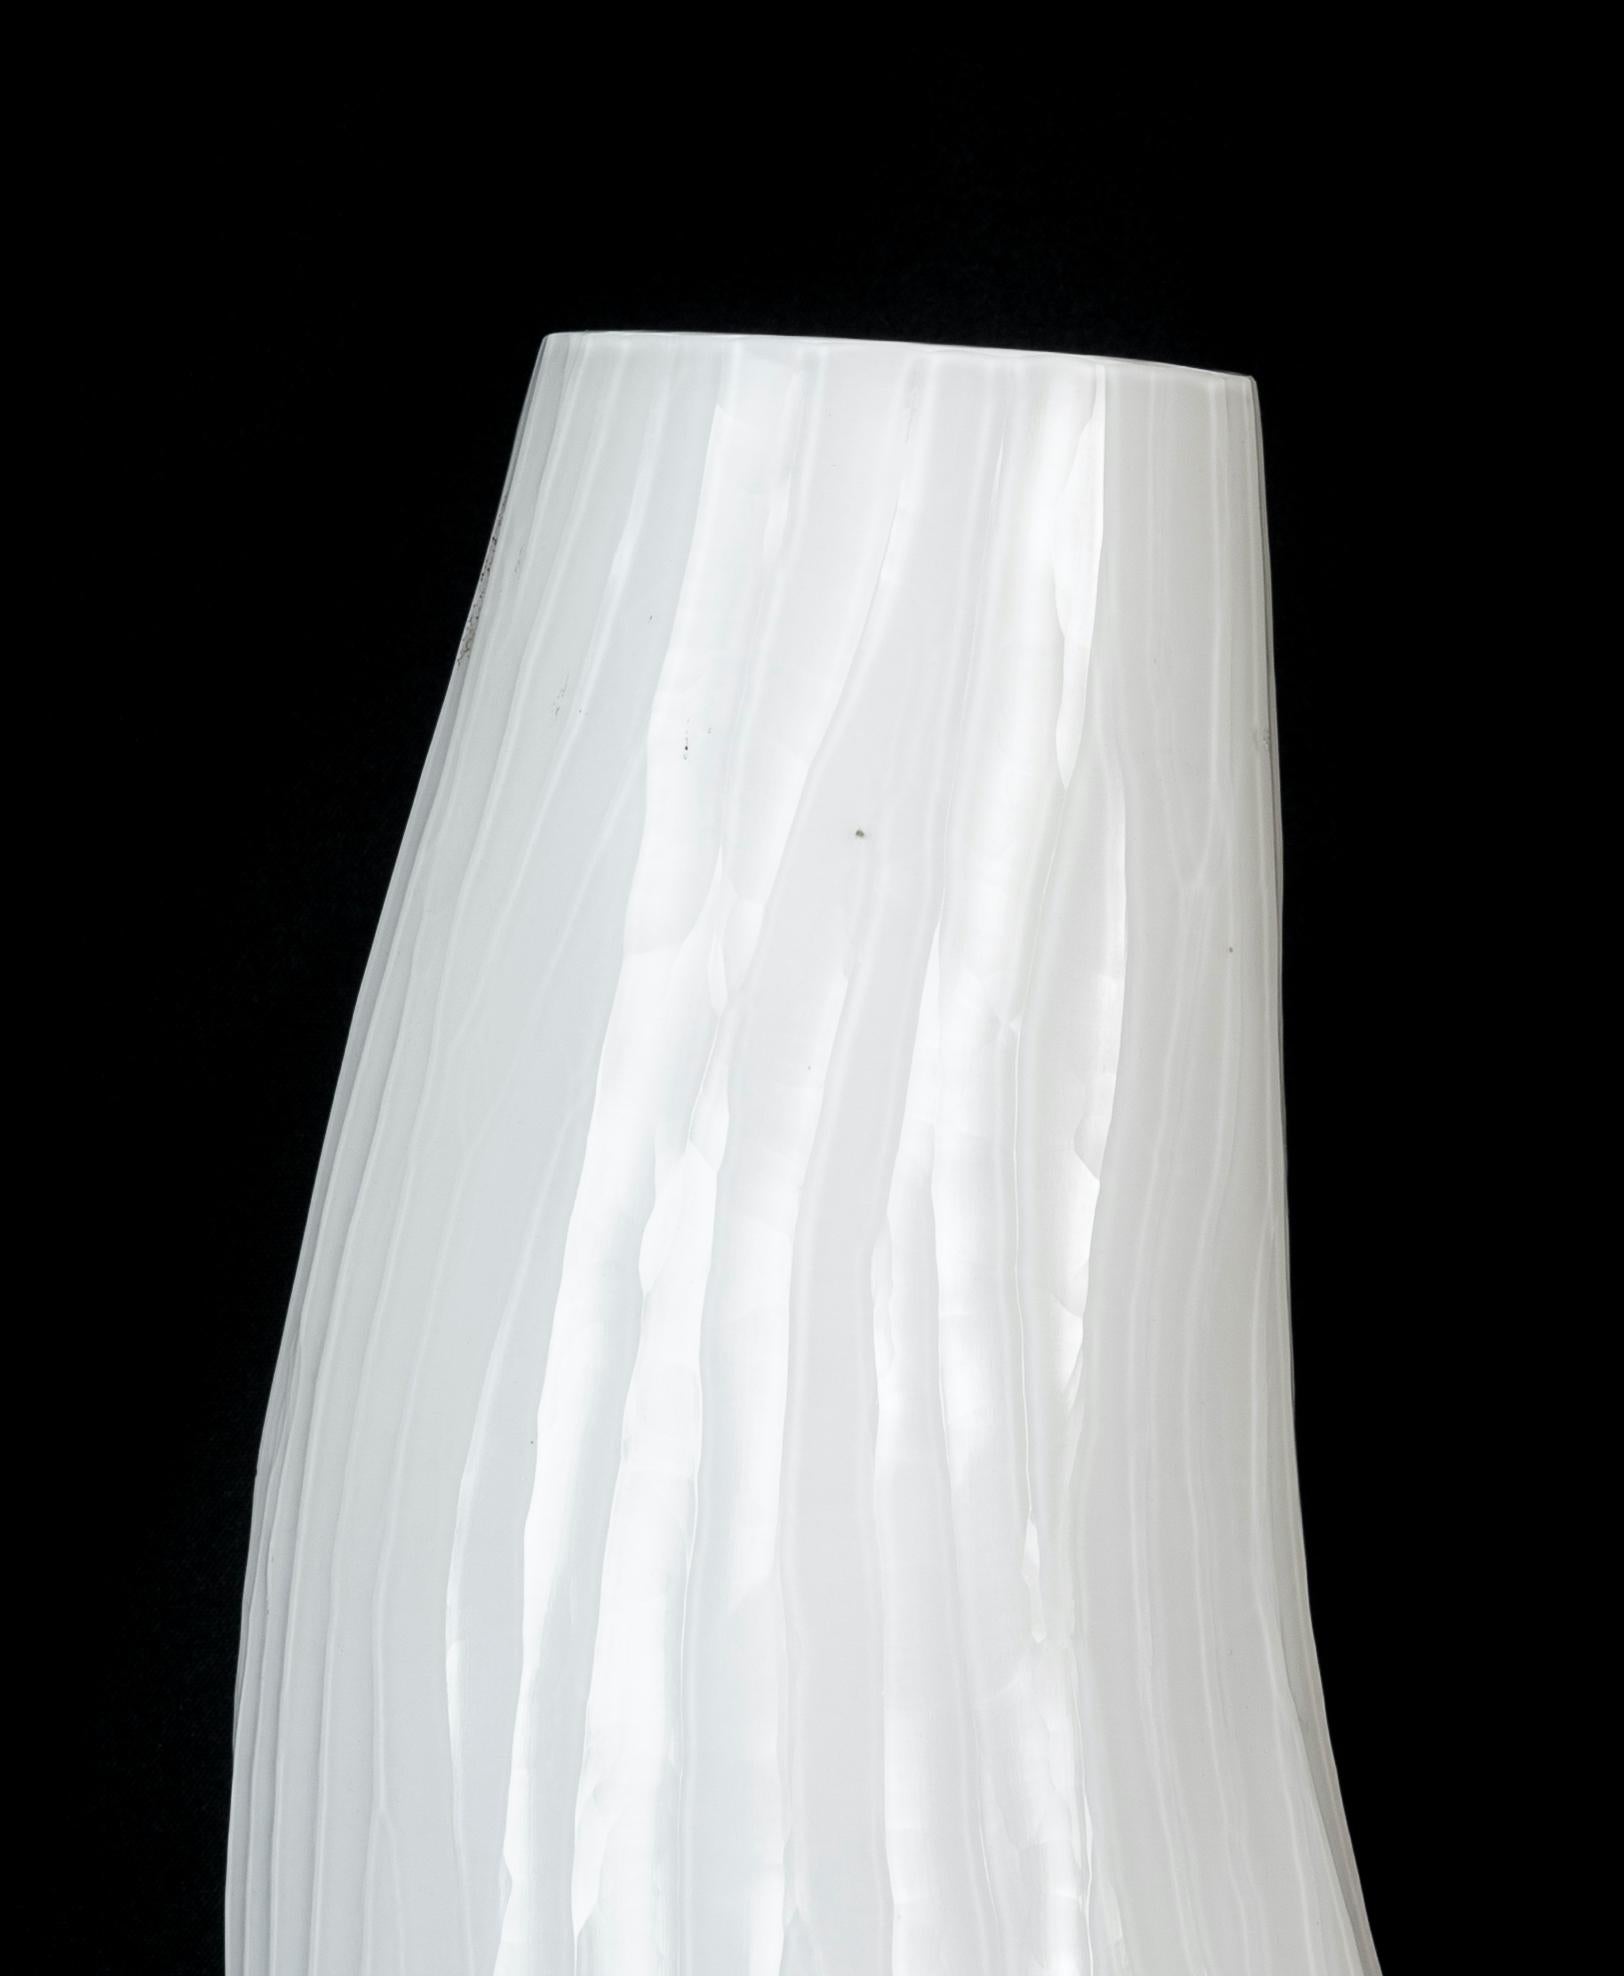 Die Vase aus weißem Glas ist ein wunderschönes Dekorationsobjekt aus Glas, das in den 1970er Jahren hergestellt wurde. 

Sehr schöne Glasvase mit einer sinusförmigen Form. Die Vase hat eine besondere Glasbearbeitung, die 
das macht sie